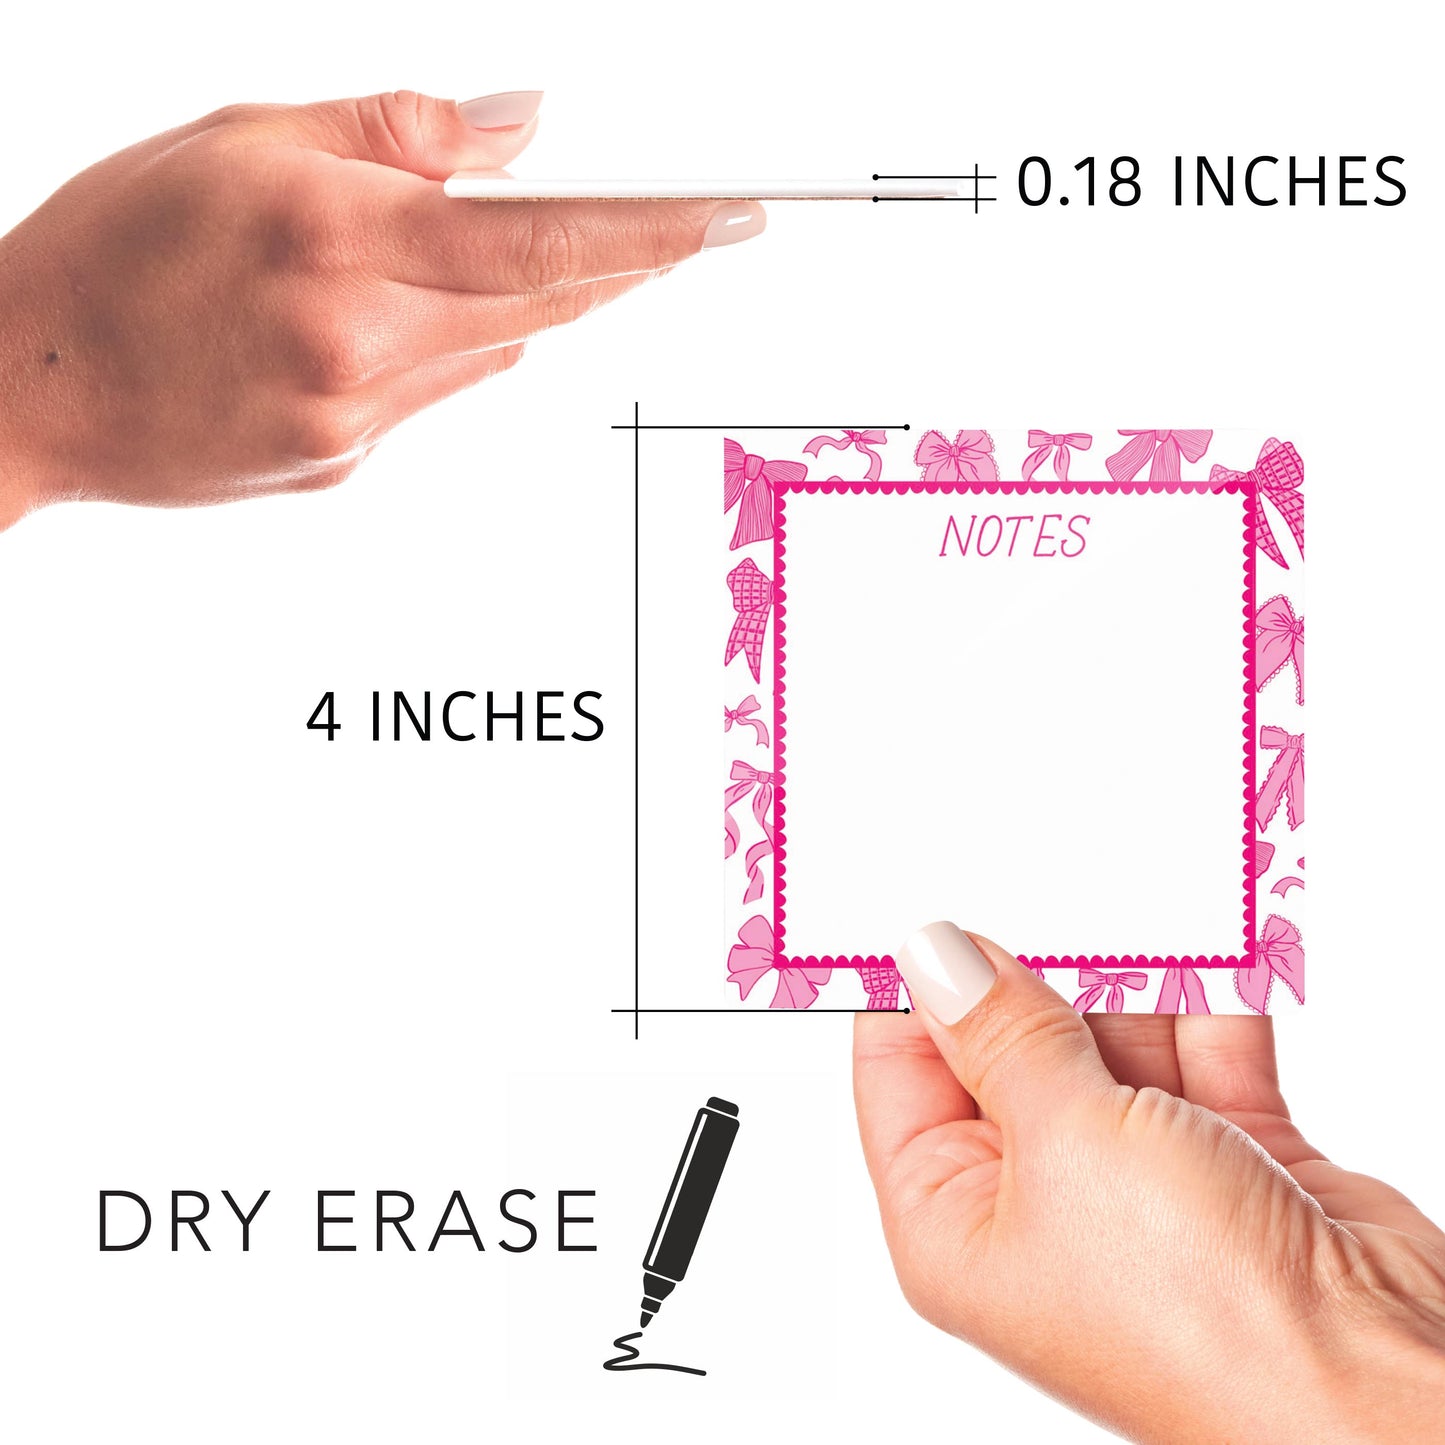 Kalia Lane 4x4 Dry Erase | Preppy Bows Pink Scalloped Border Notes